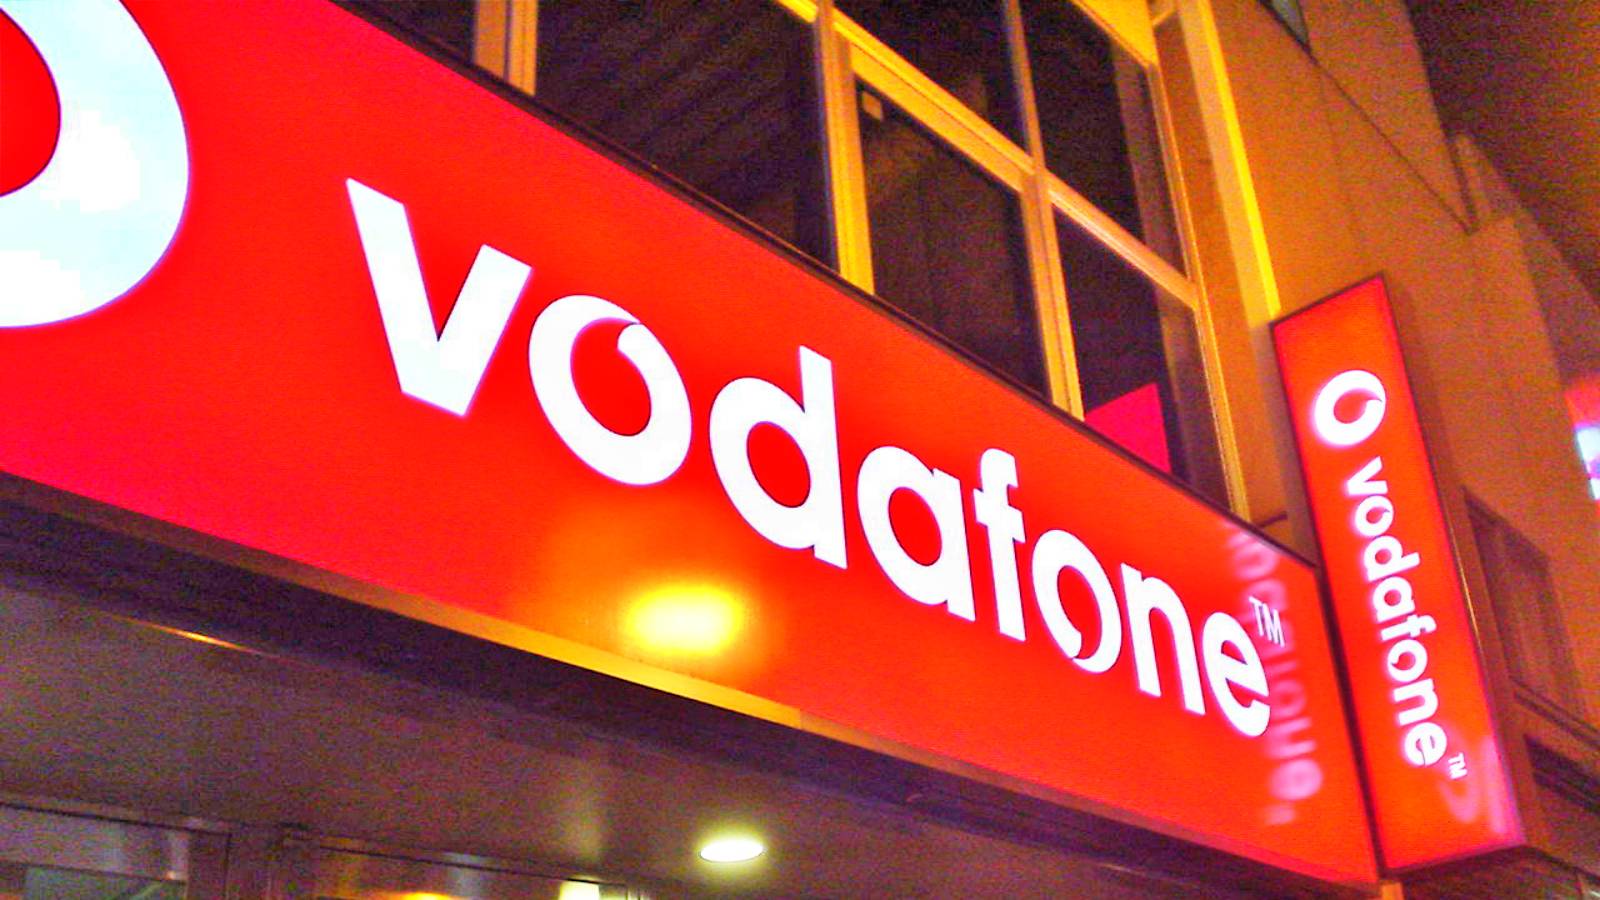 Wiadomość Vodafone do klientów w Rumunii, którą każdy musi znać